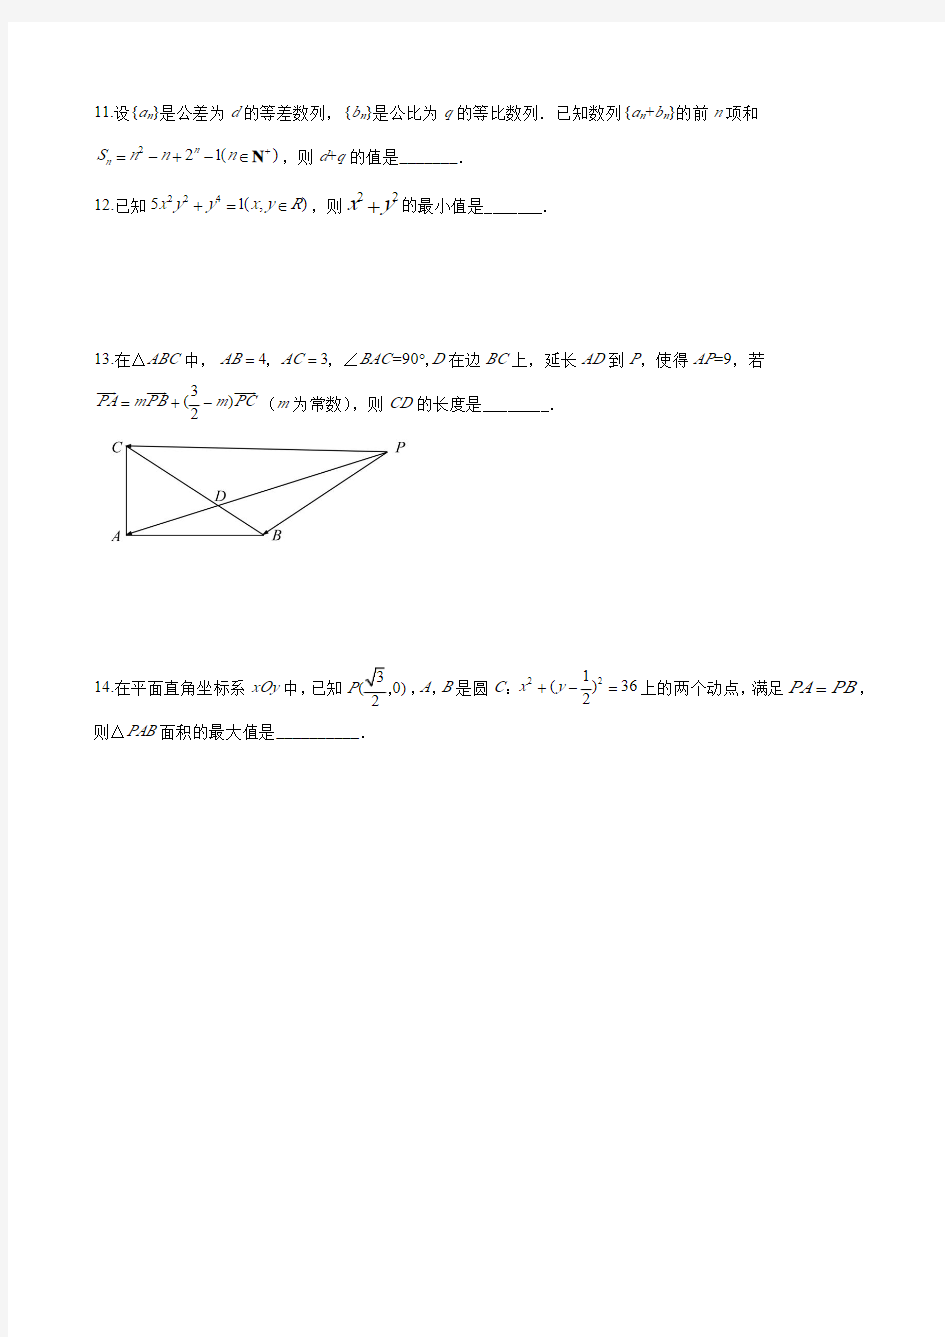 2020年江苏省高考数学试卷(原卷版)